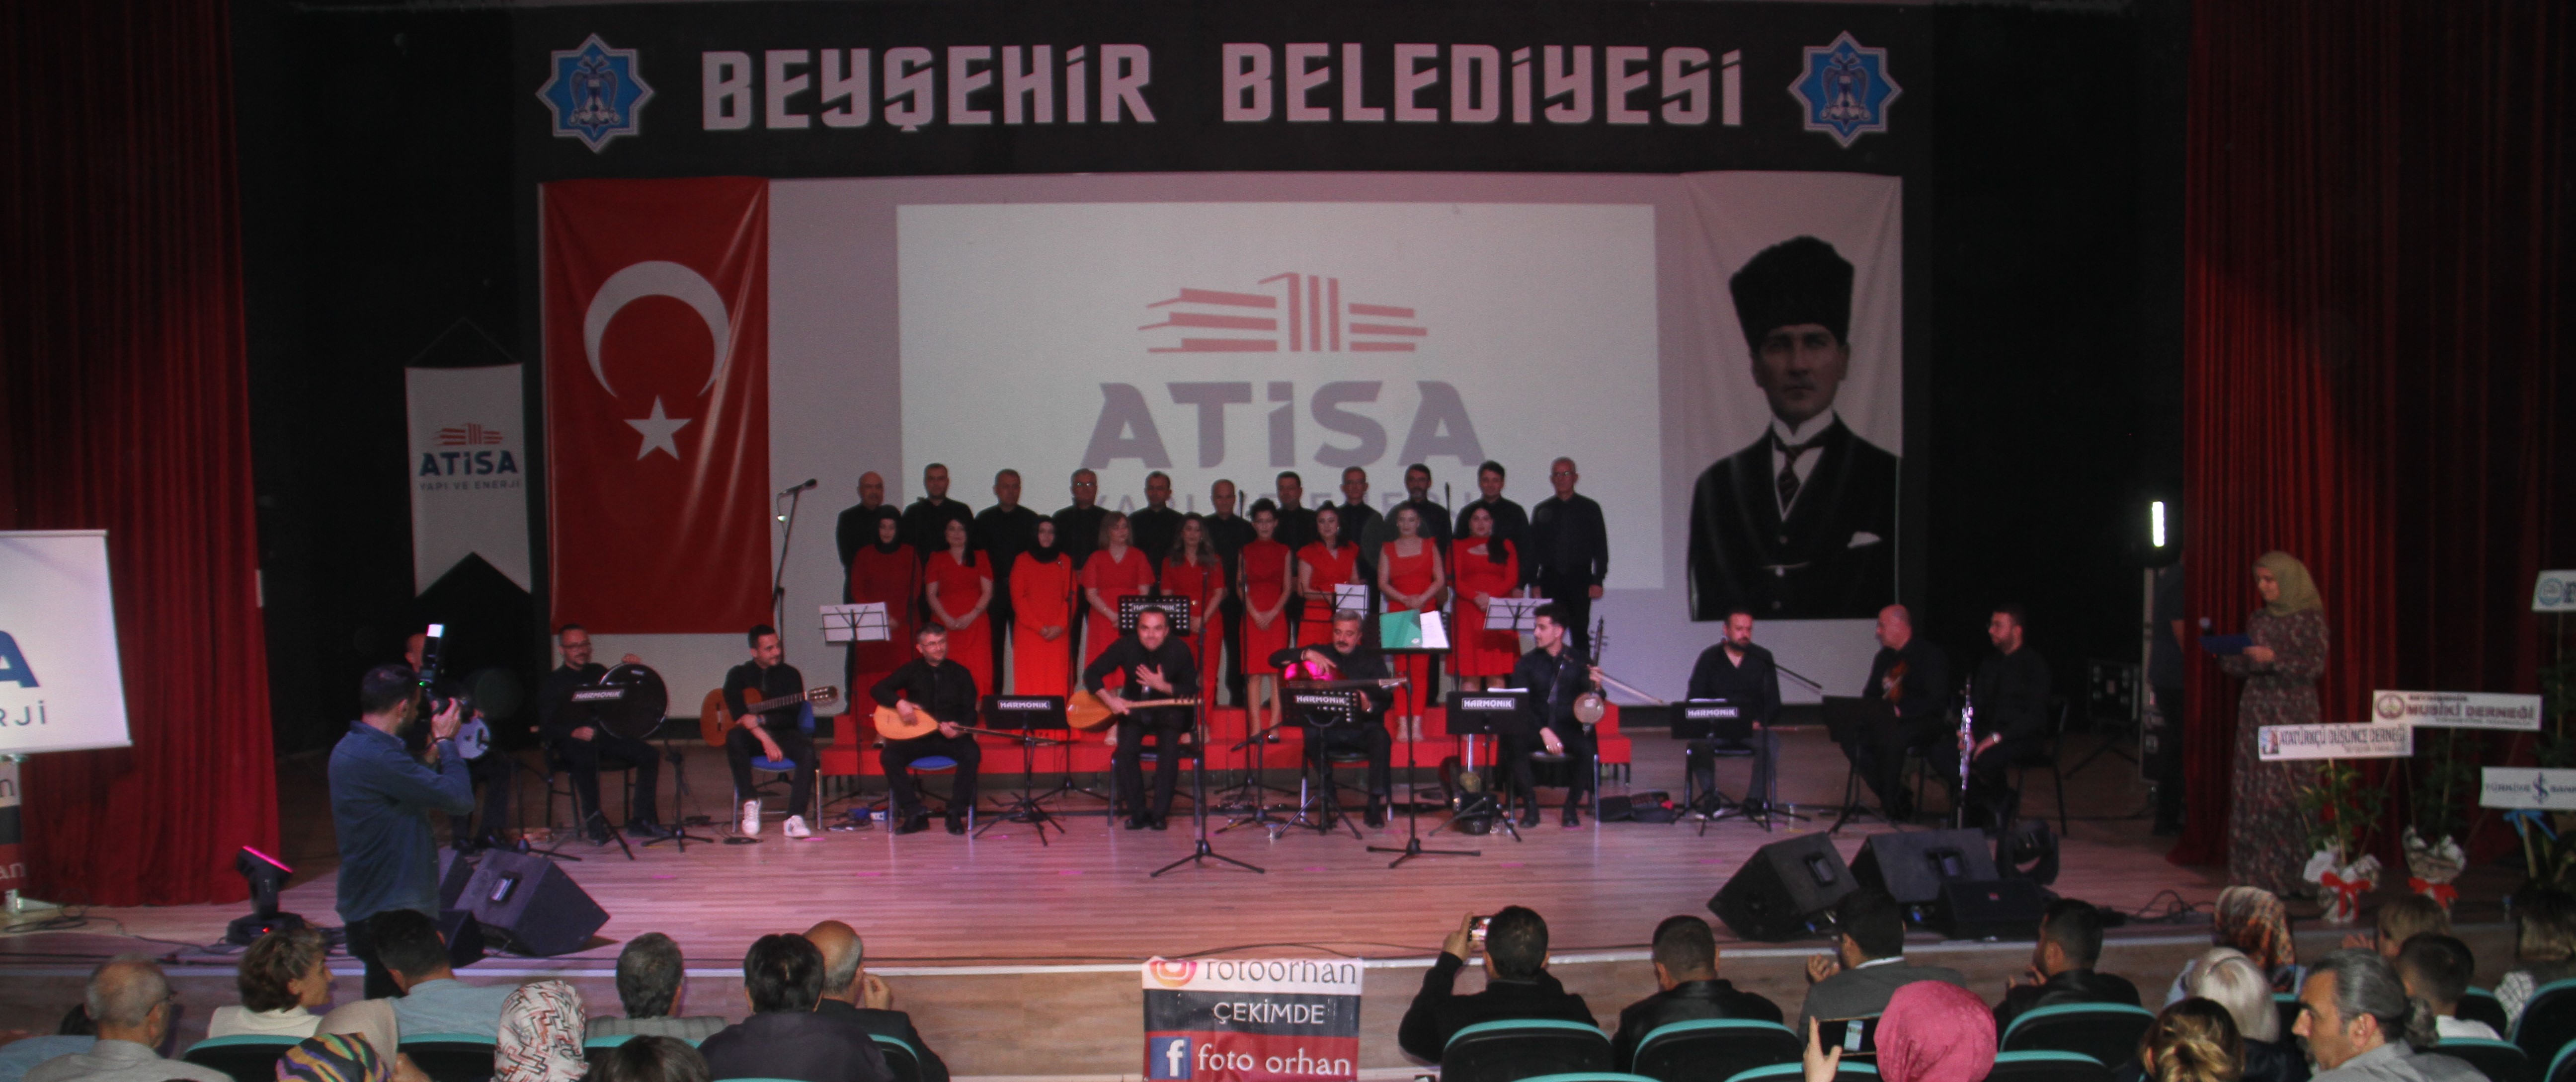 Beyşehir'de halk müziği konseri